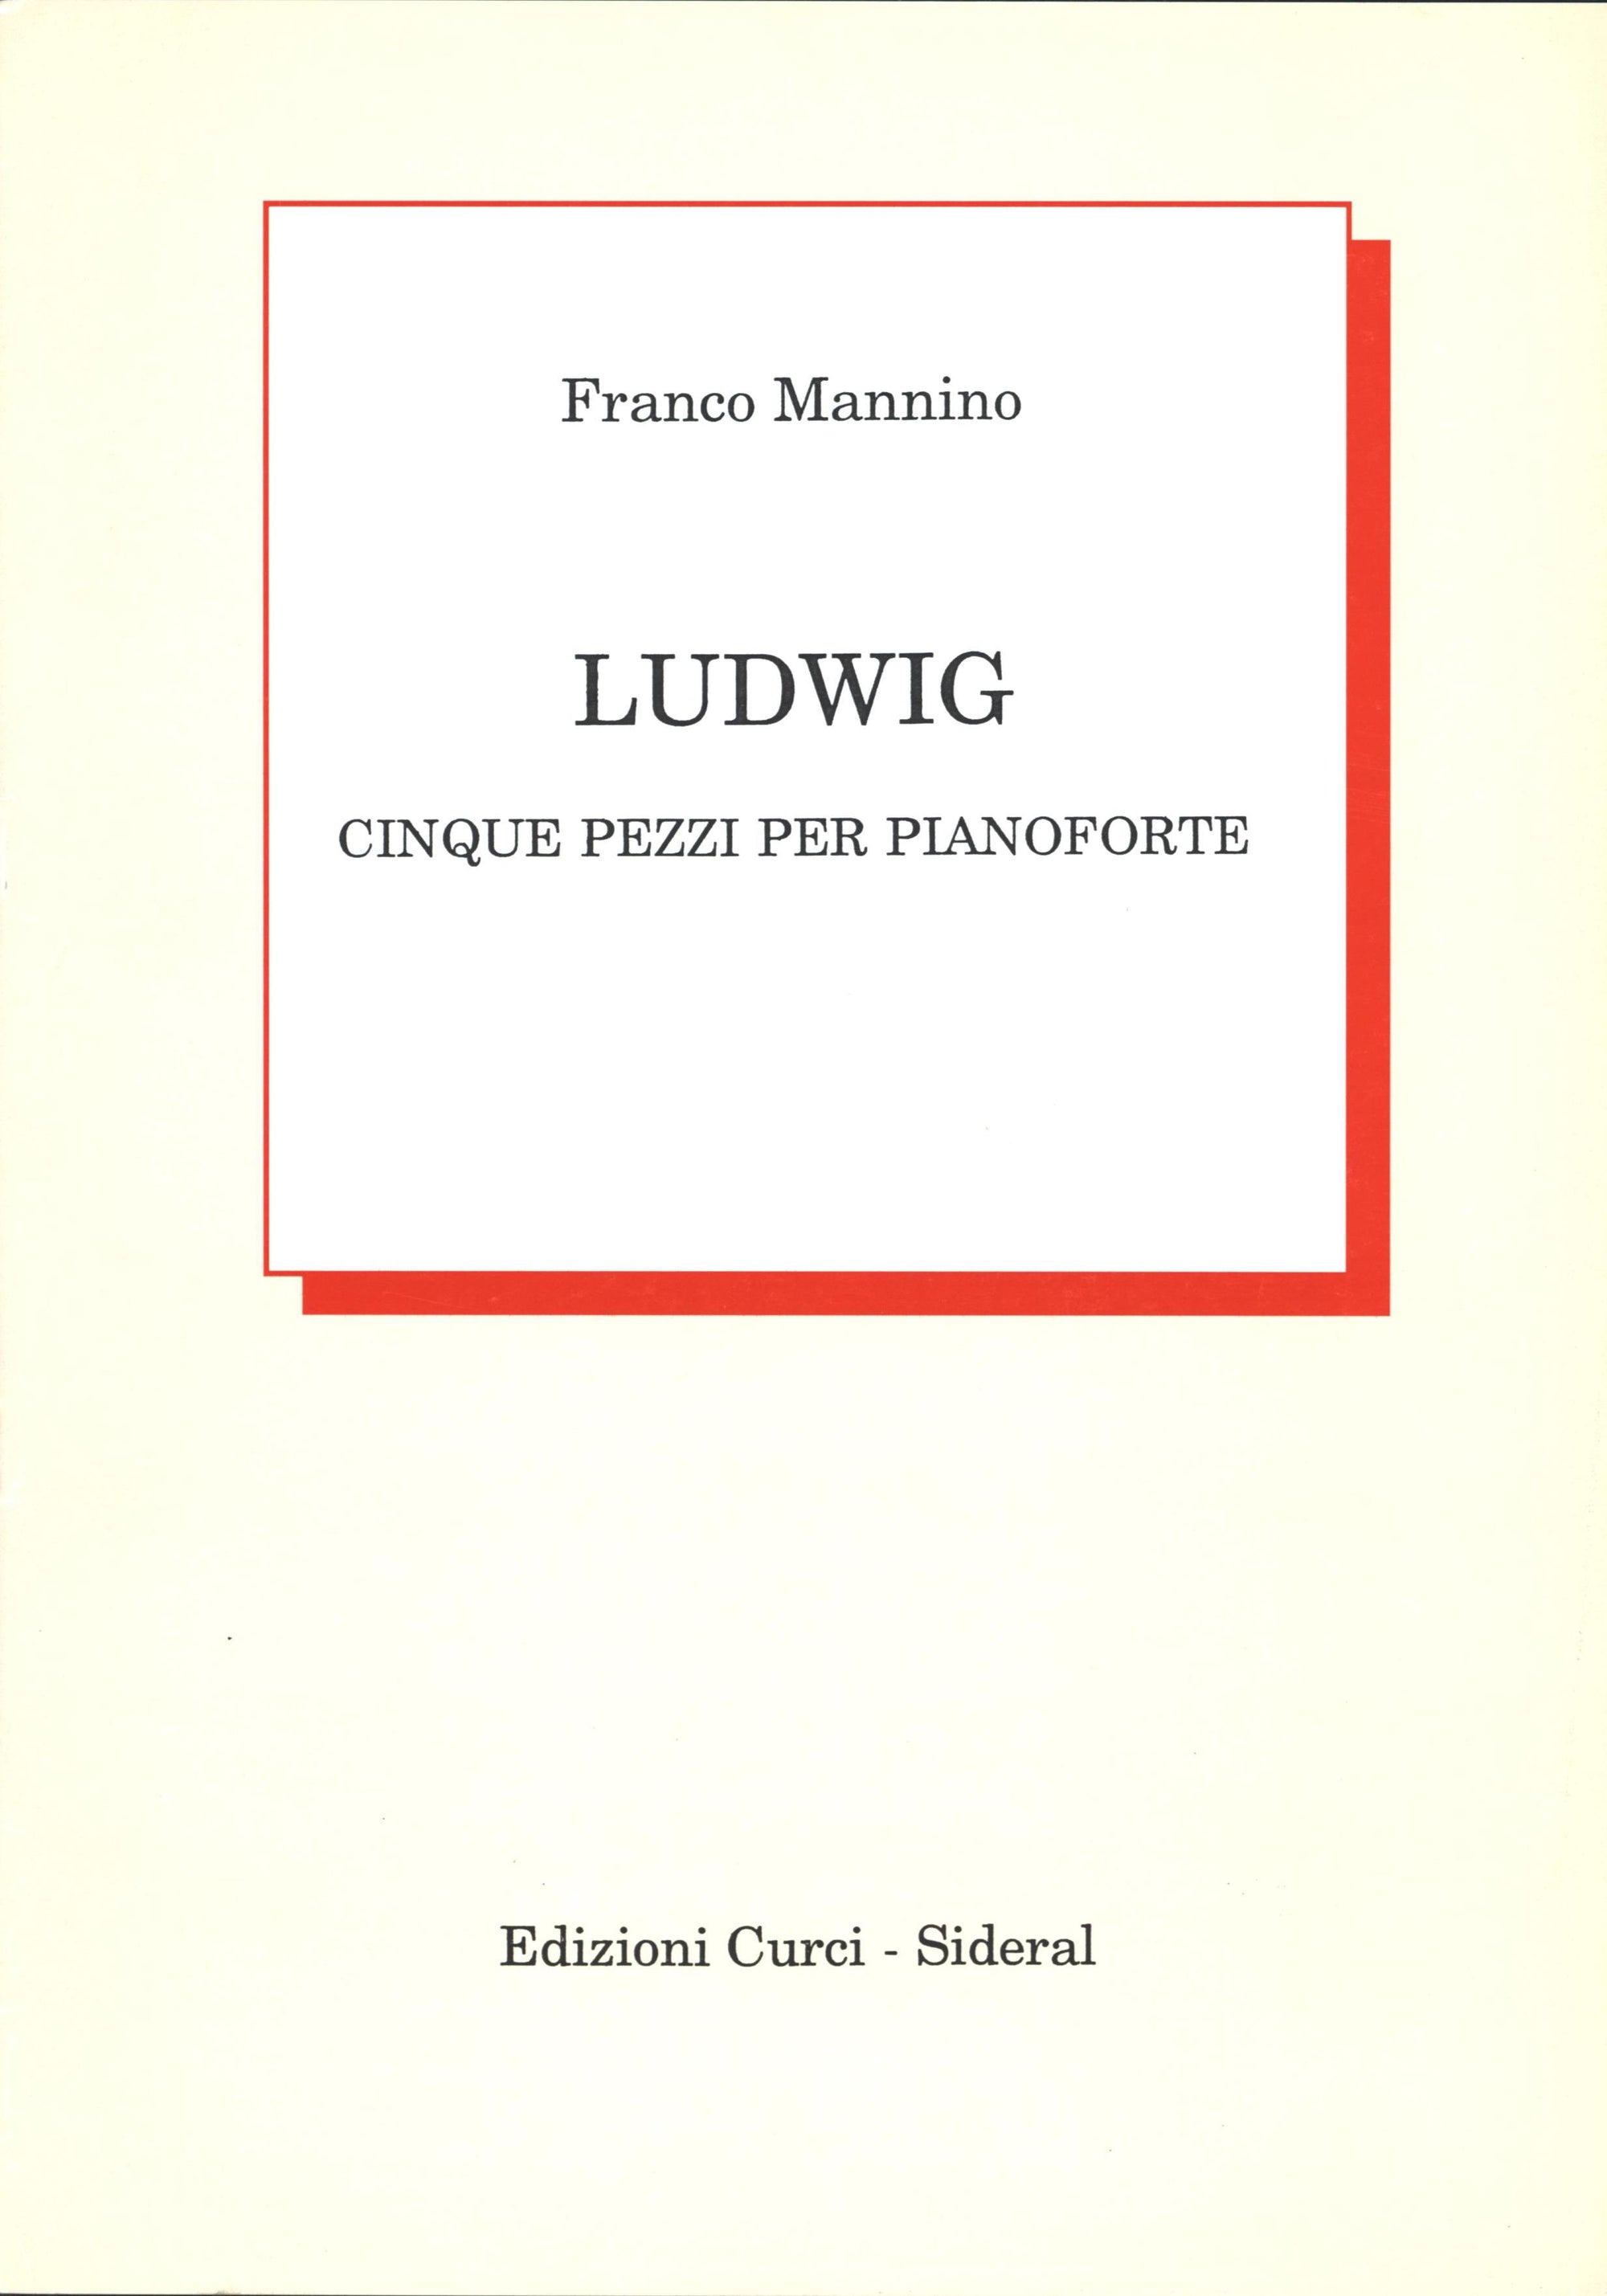 Mannino: Ludwig